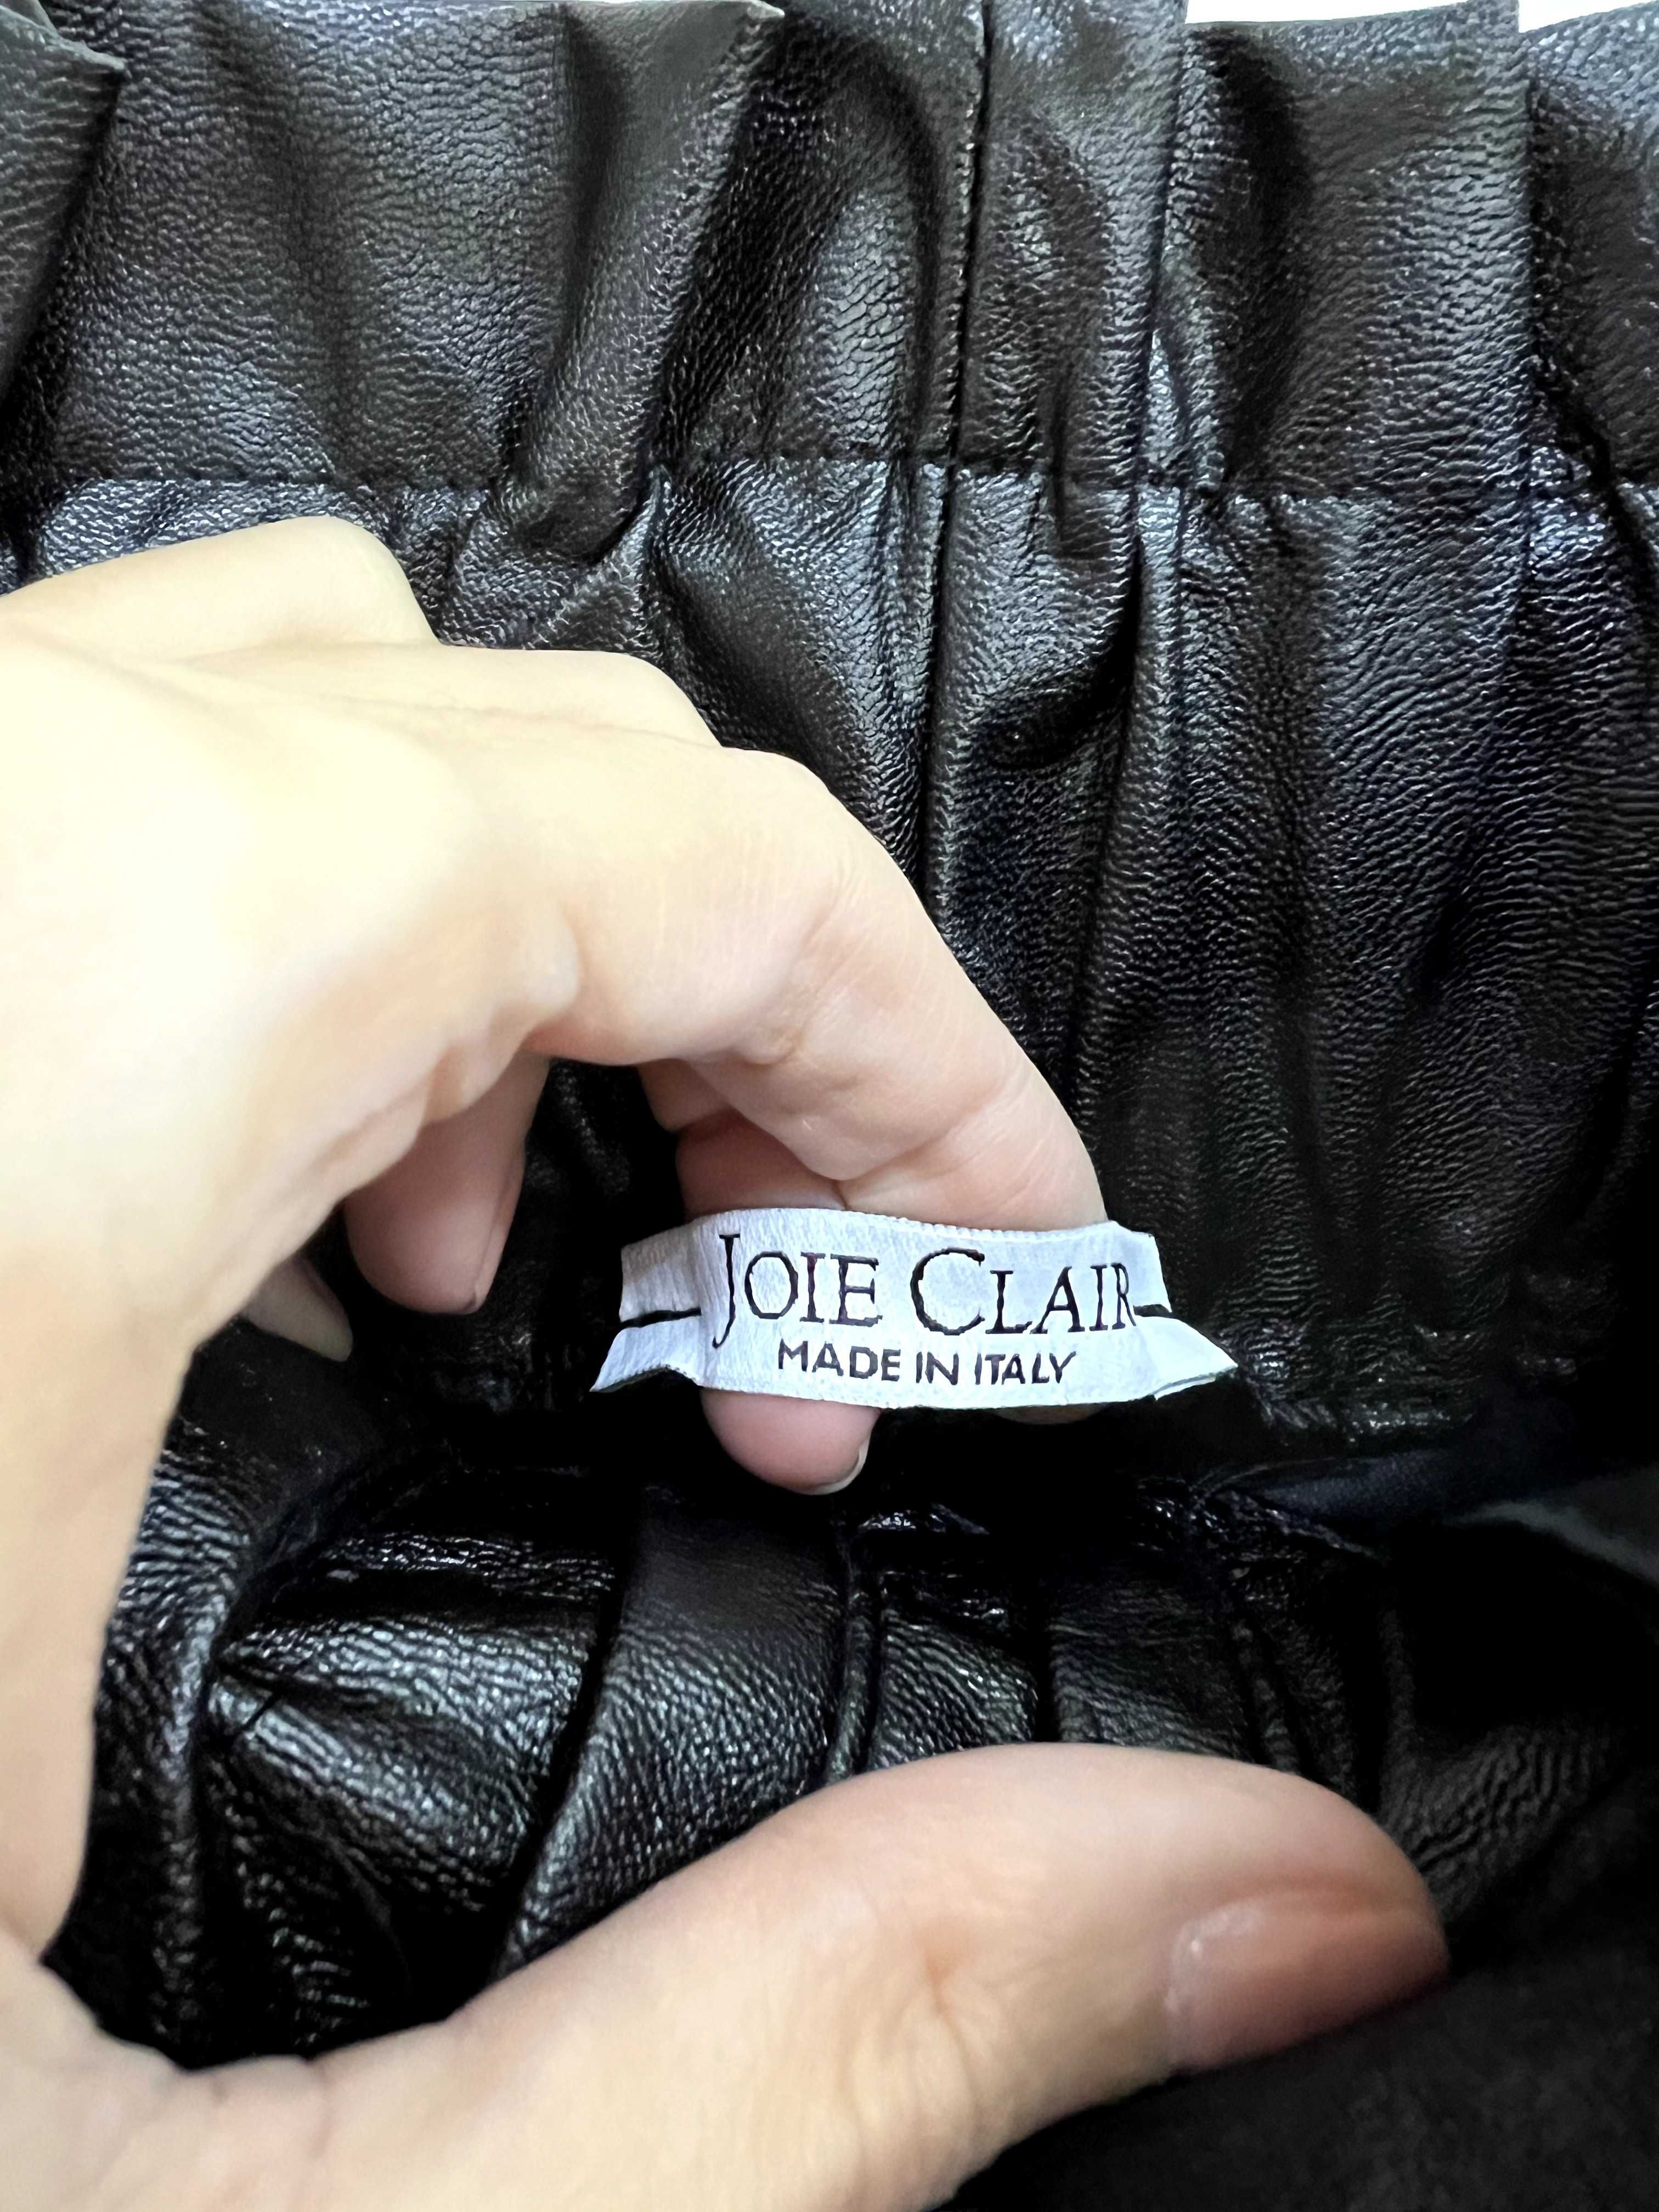 Nova saia confeccionada em couro ecológico joie Clair, Itália.